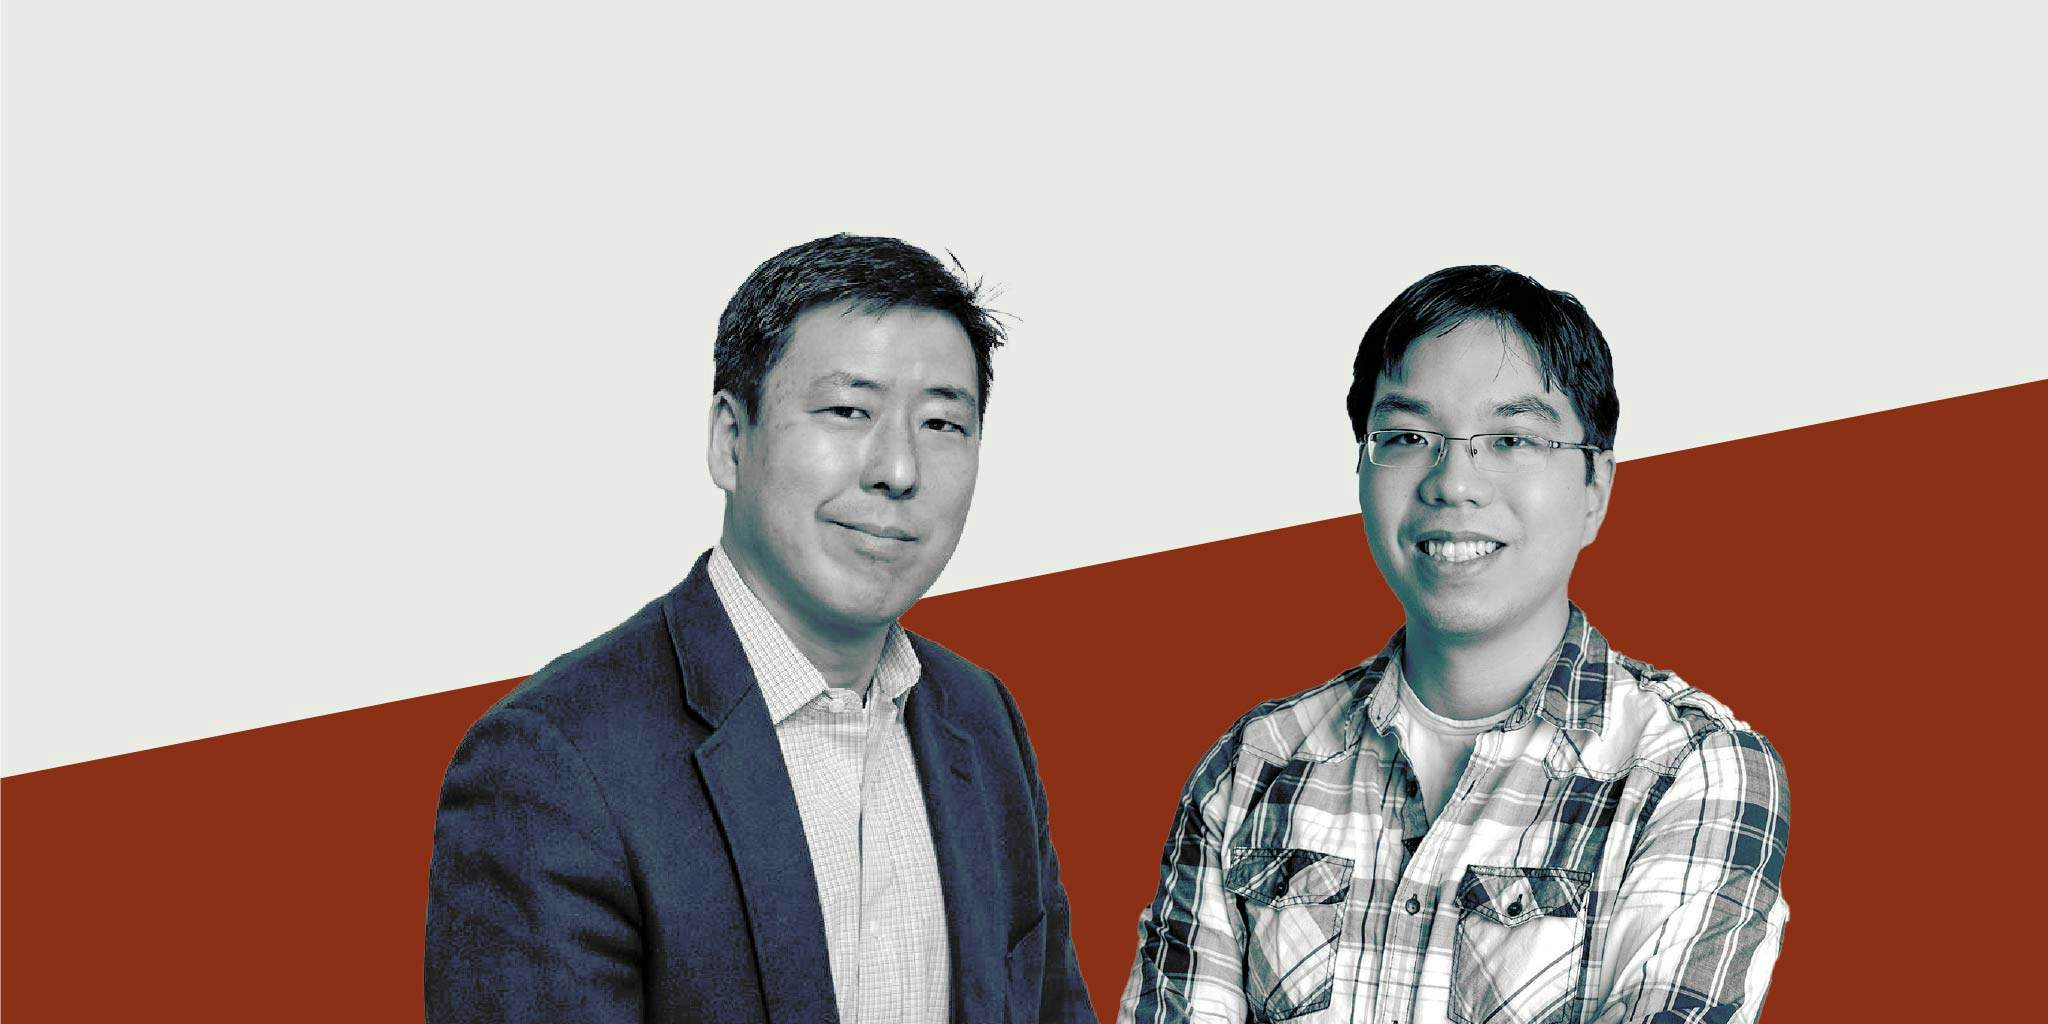 Triphammer Ventures’ Managing Partner David Cynn and Senior Principal Wesley Yiu